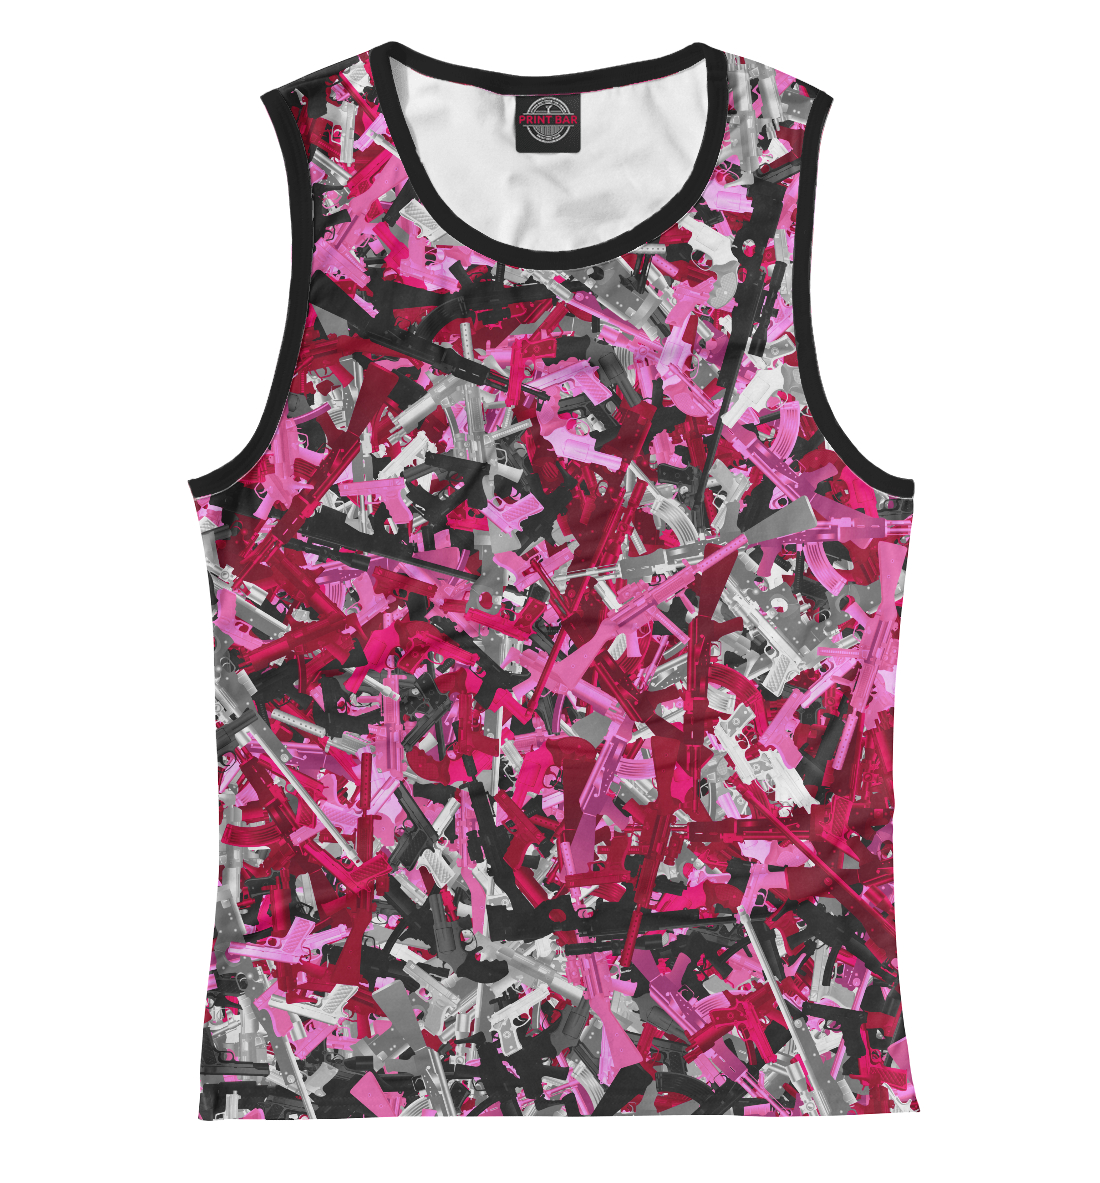 Женская Майка Розовый камуфляж с оружием, артикул CMF-629101-may-1mp